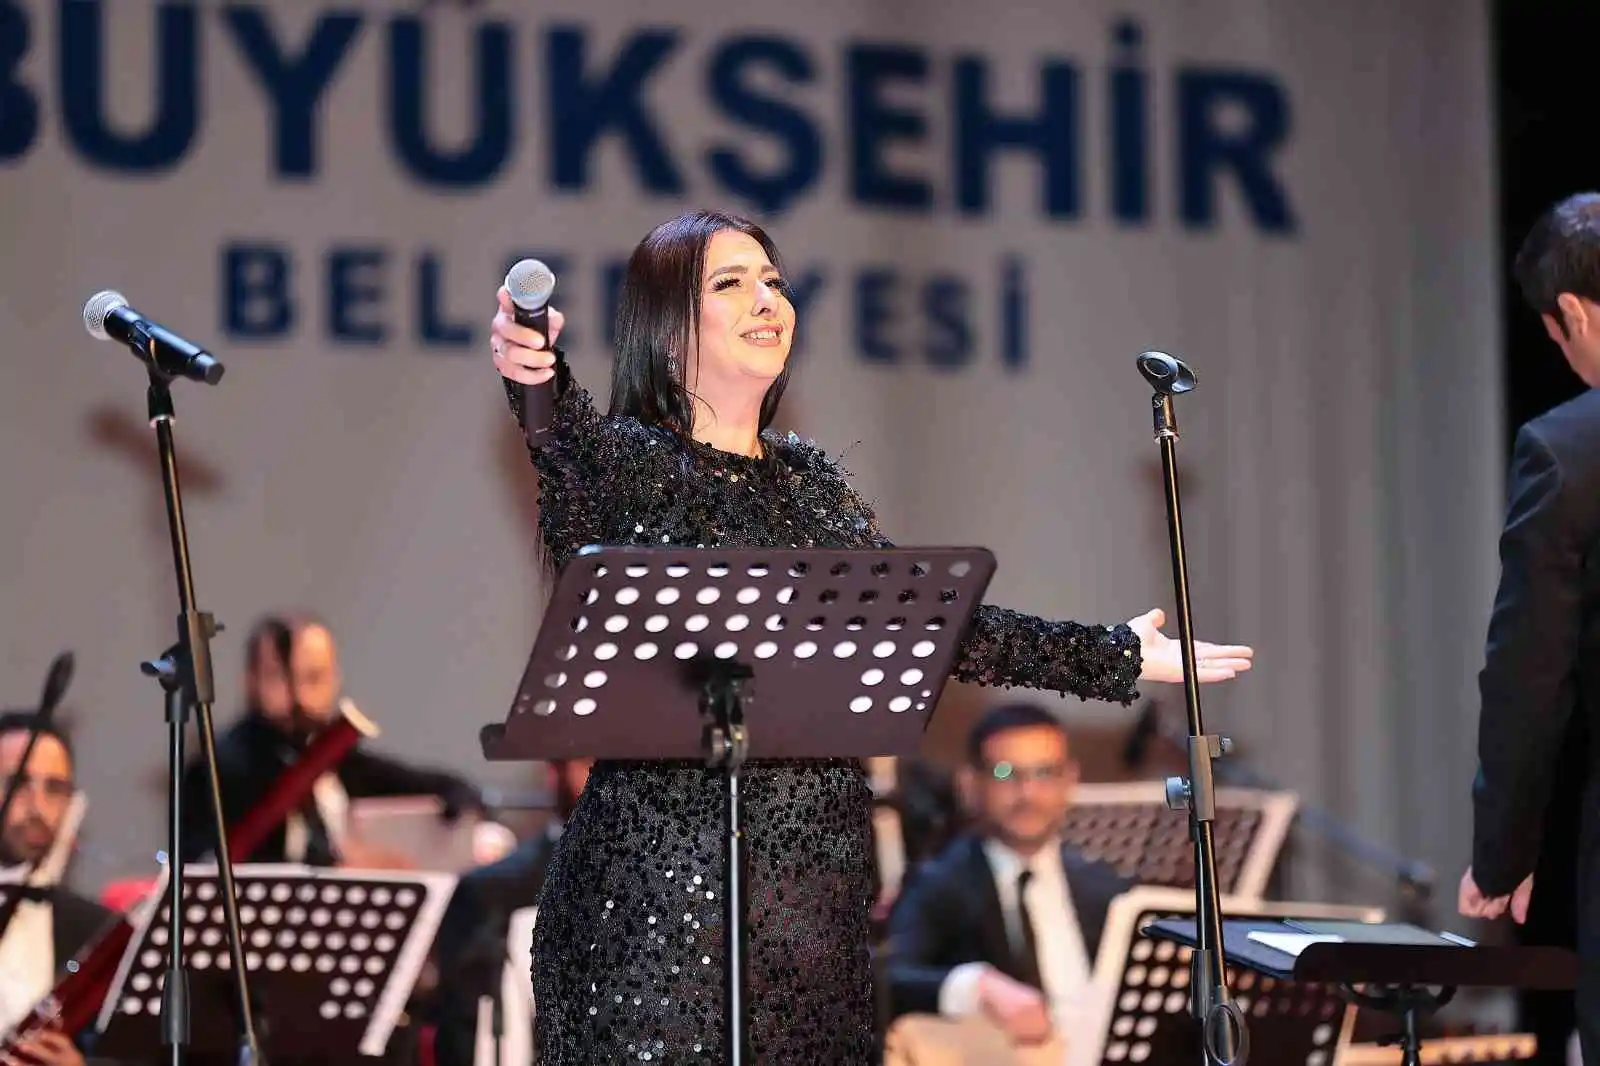 Dev orkestra Neşet Ertaş’ın türkülerini seslendirdi
